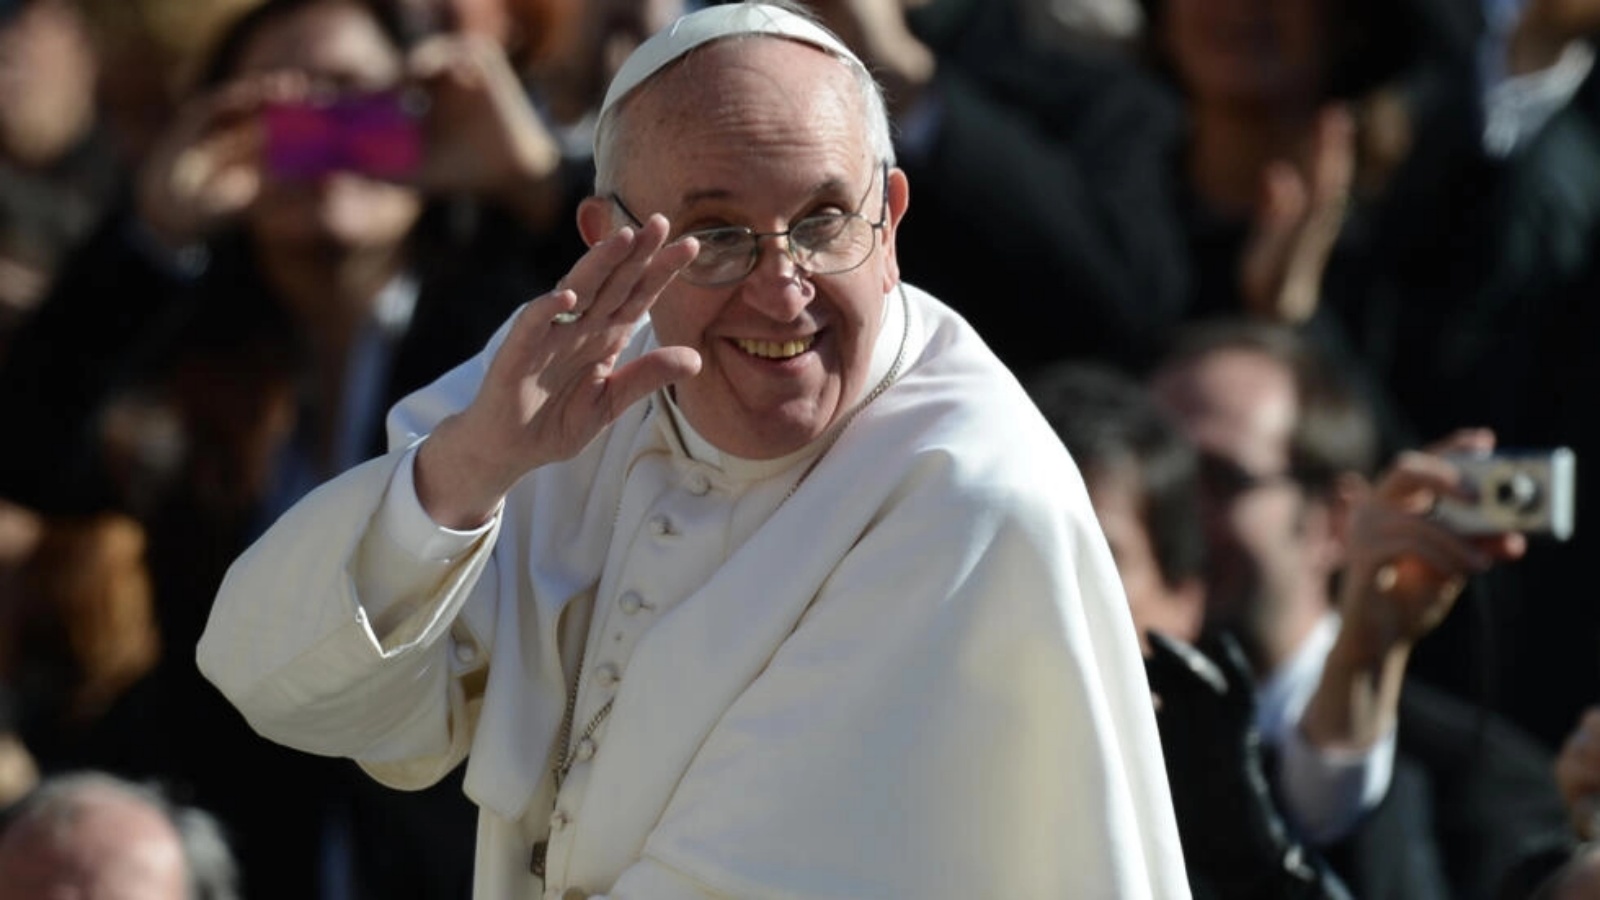 البابا فرنسيس يلوح للحشود خلال قداس بدء حبريته في ساحة القديس بطرس في الفاتيكان في 19 مارس 2013